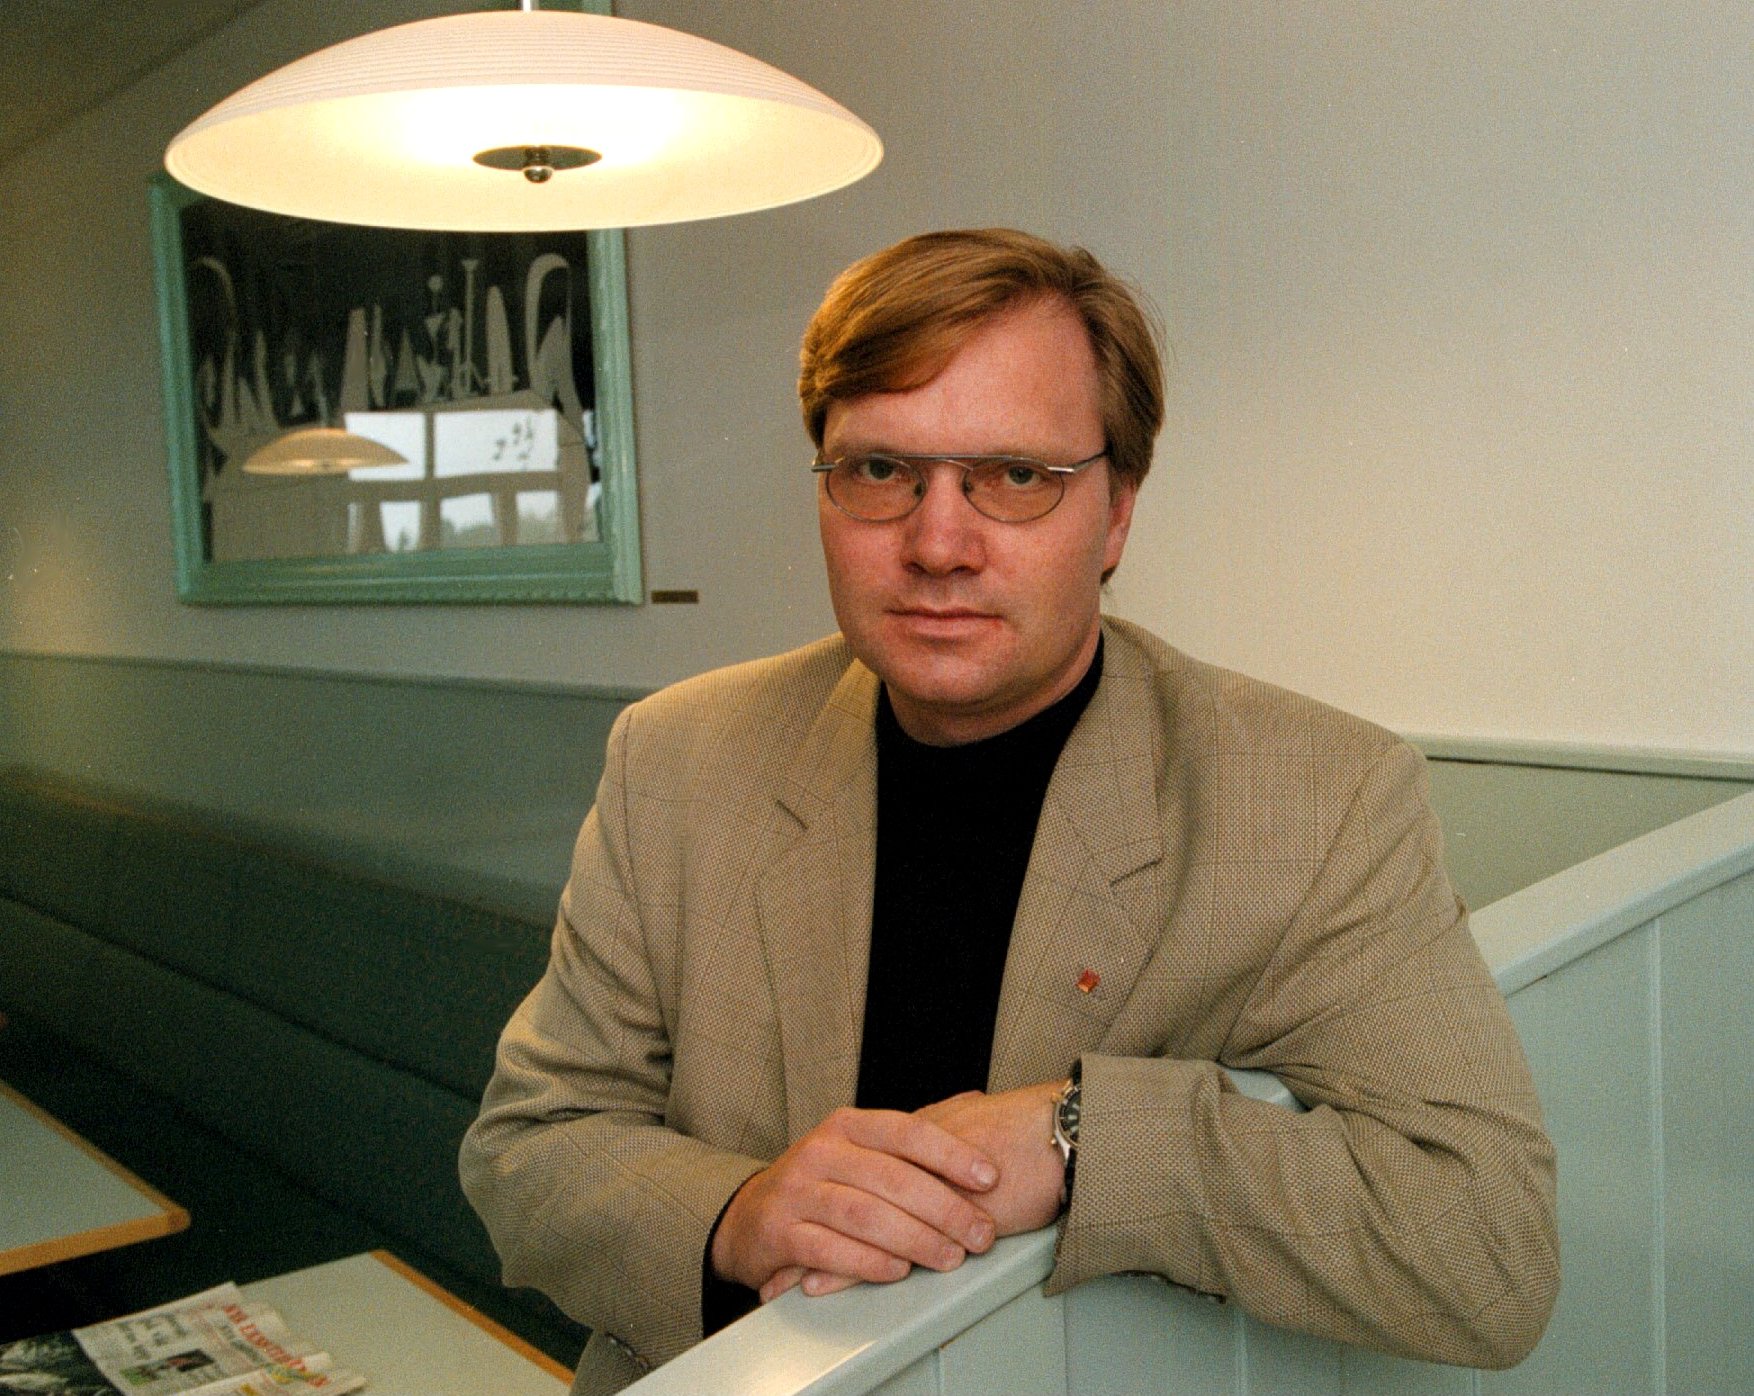 Riksdagsvalet 2010, Kidnappning, Rödgröna regeringen, Socialdemokraterna, Tomas Rudin